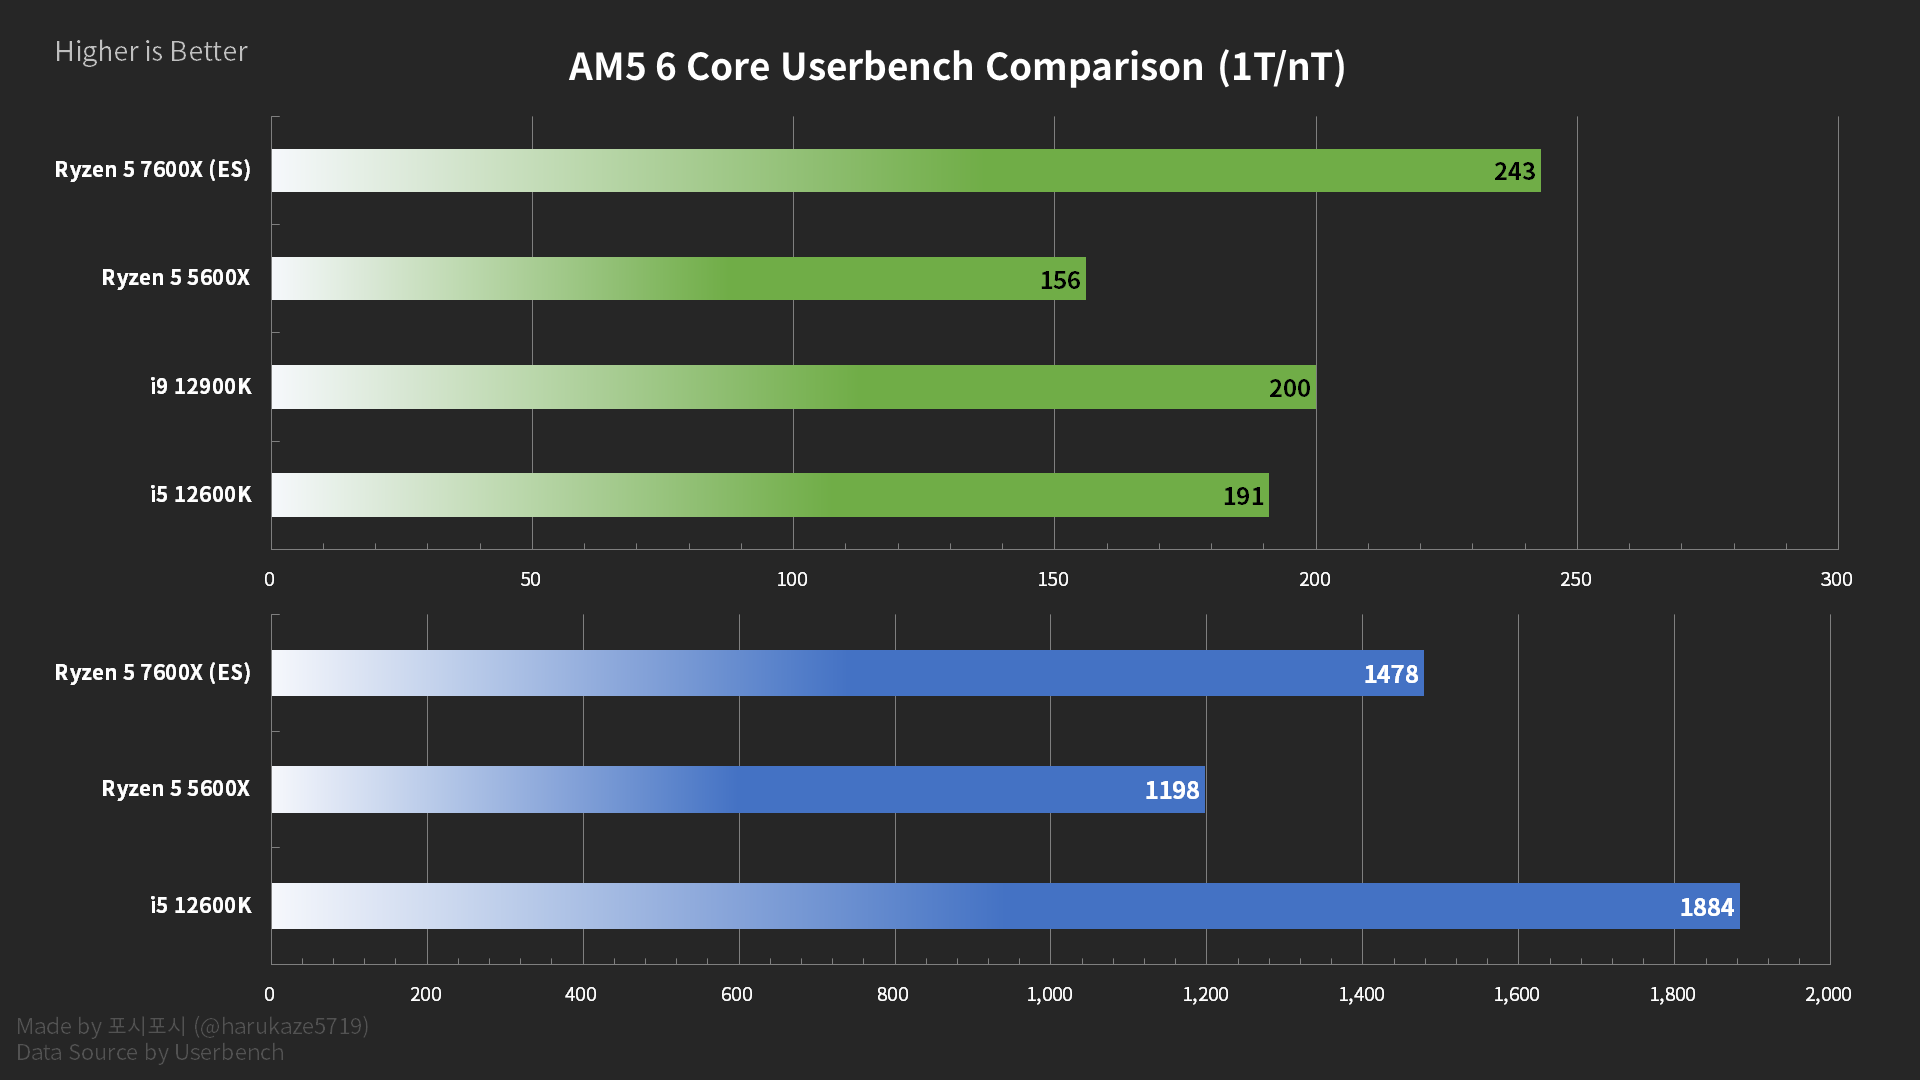 UserBenchmark: Nvidia RTX 3060 vs 4060